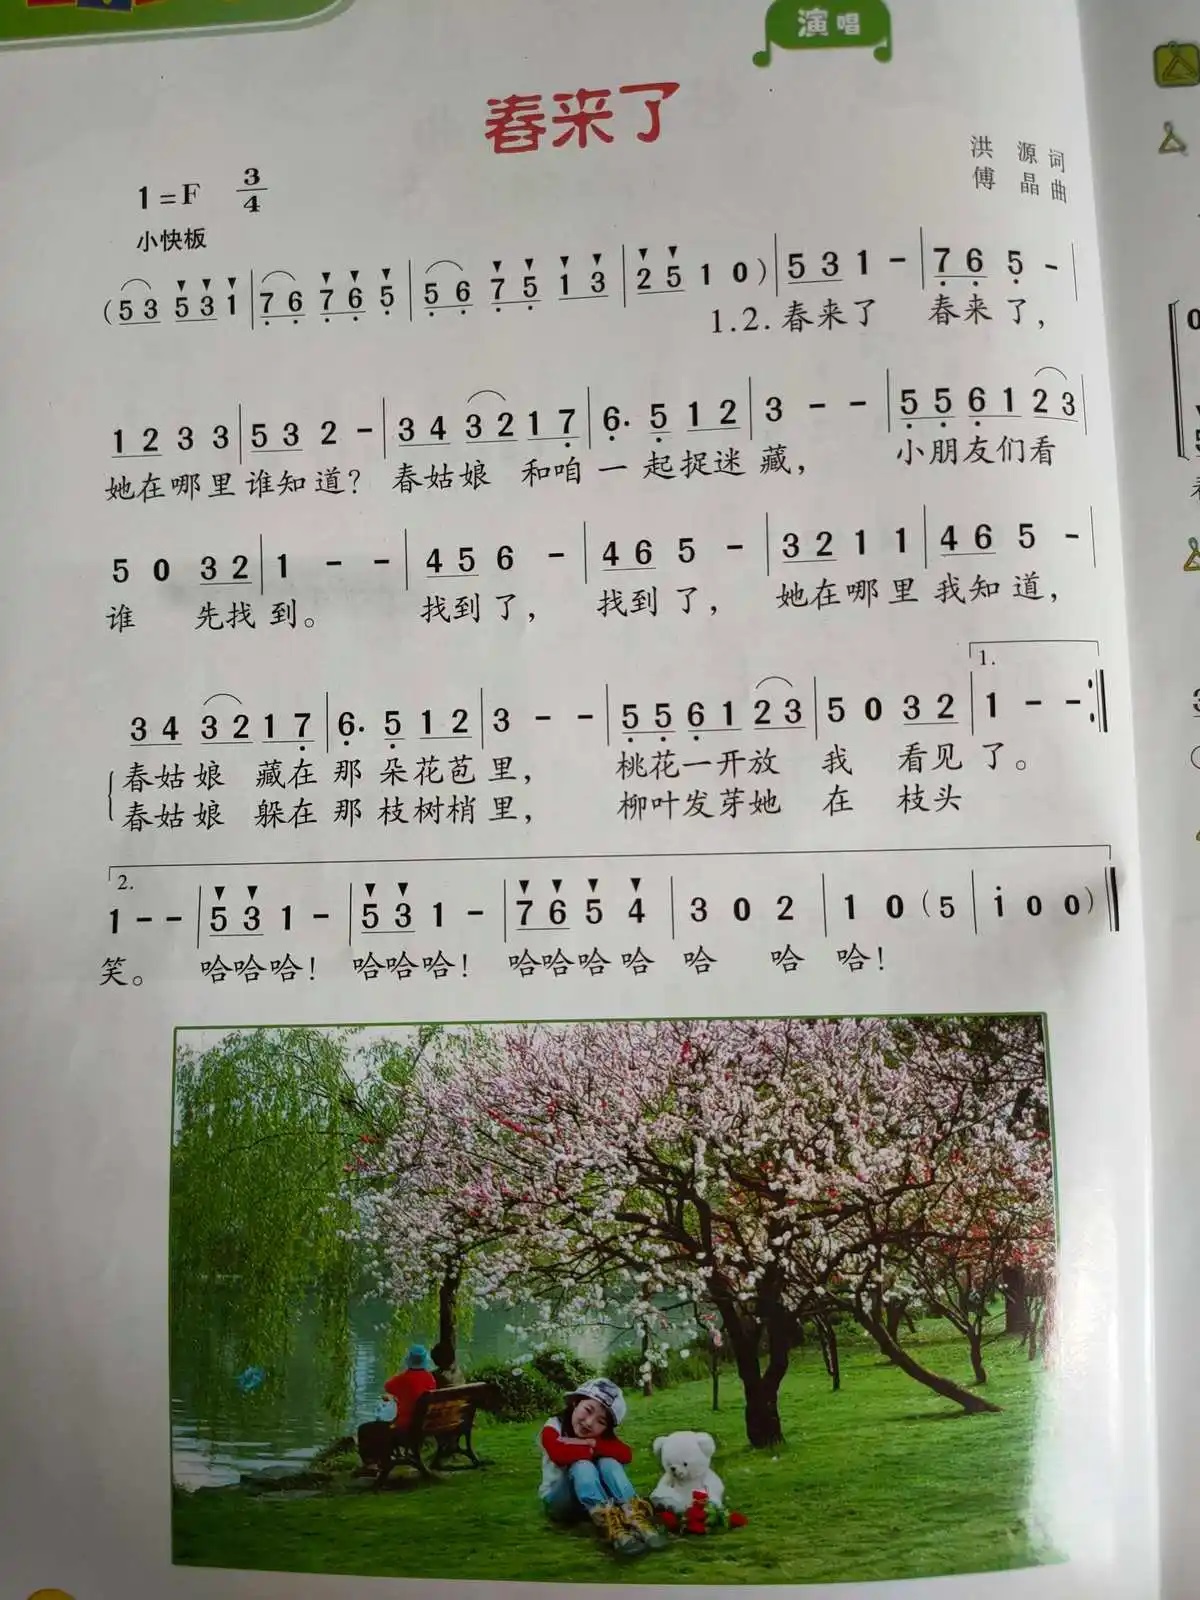 【春来了】的简谱乐谱及歌词 – 简谱